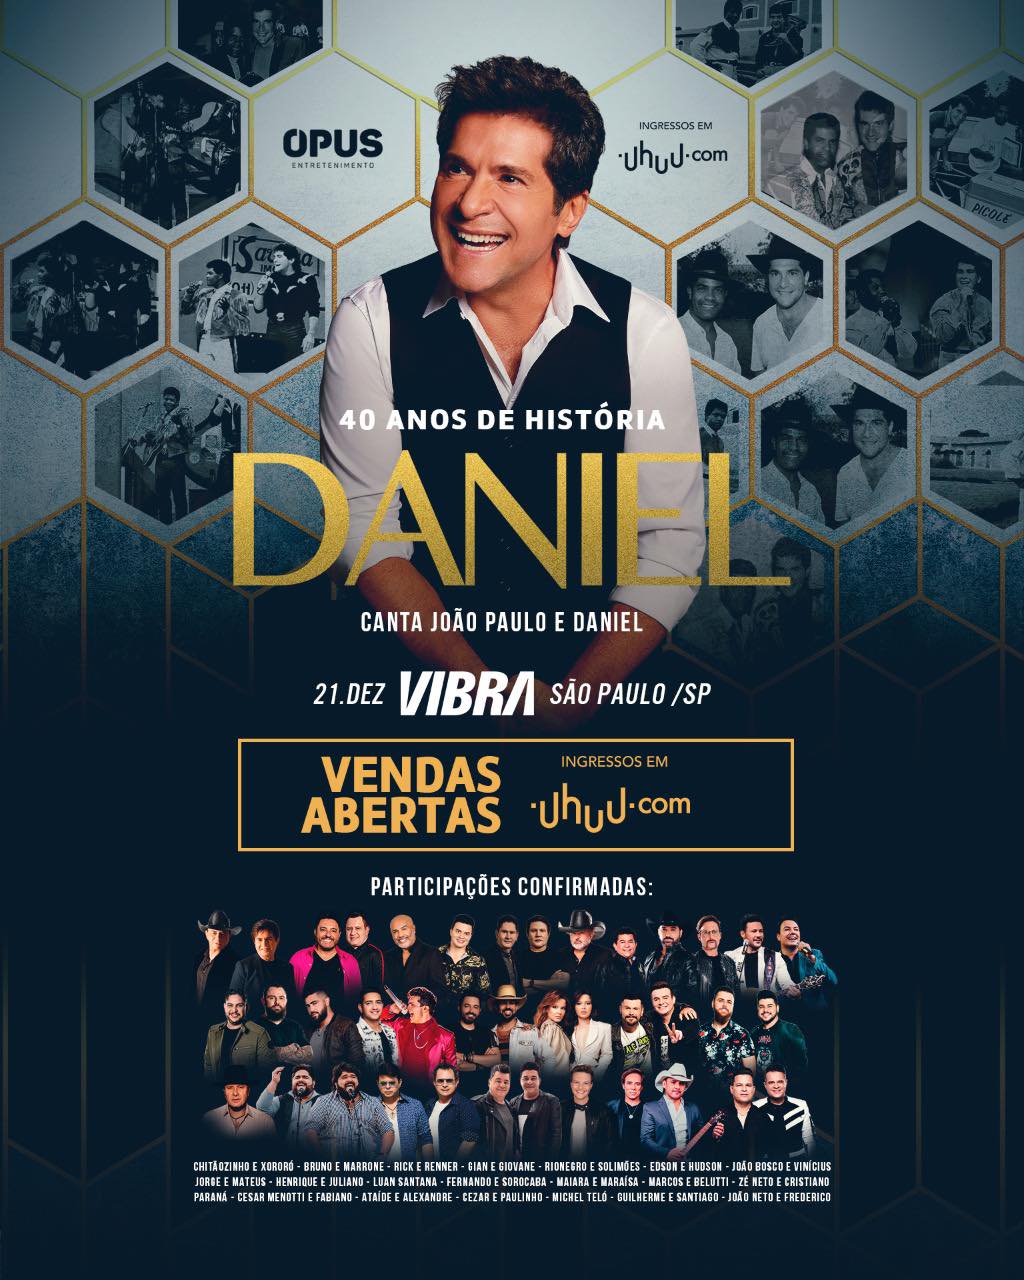 Daniel celebra 40 anos de carreira (Crédito: Divulgação/Opus Entretenimento)